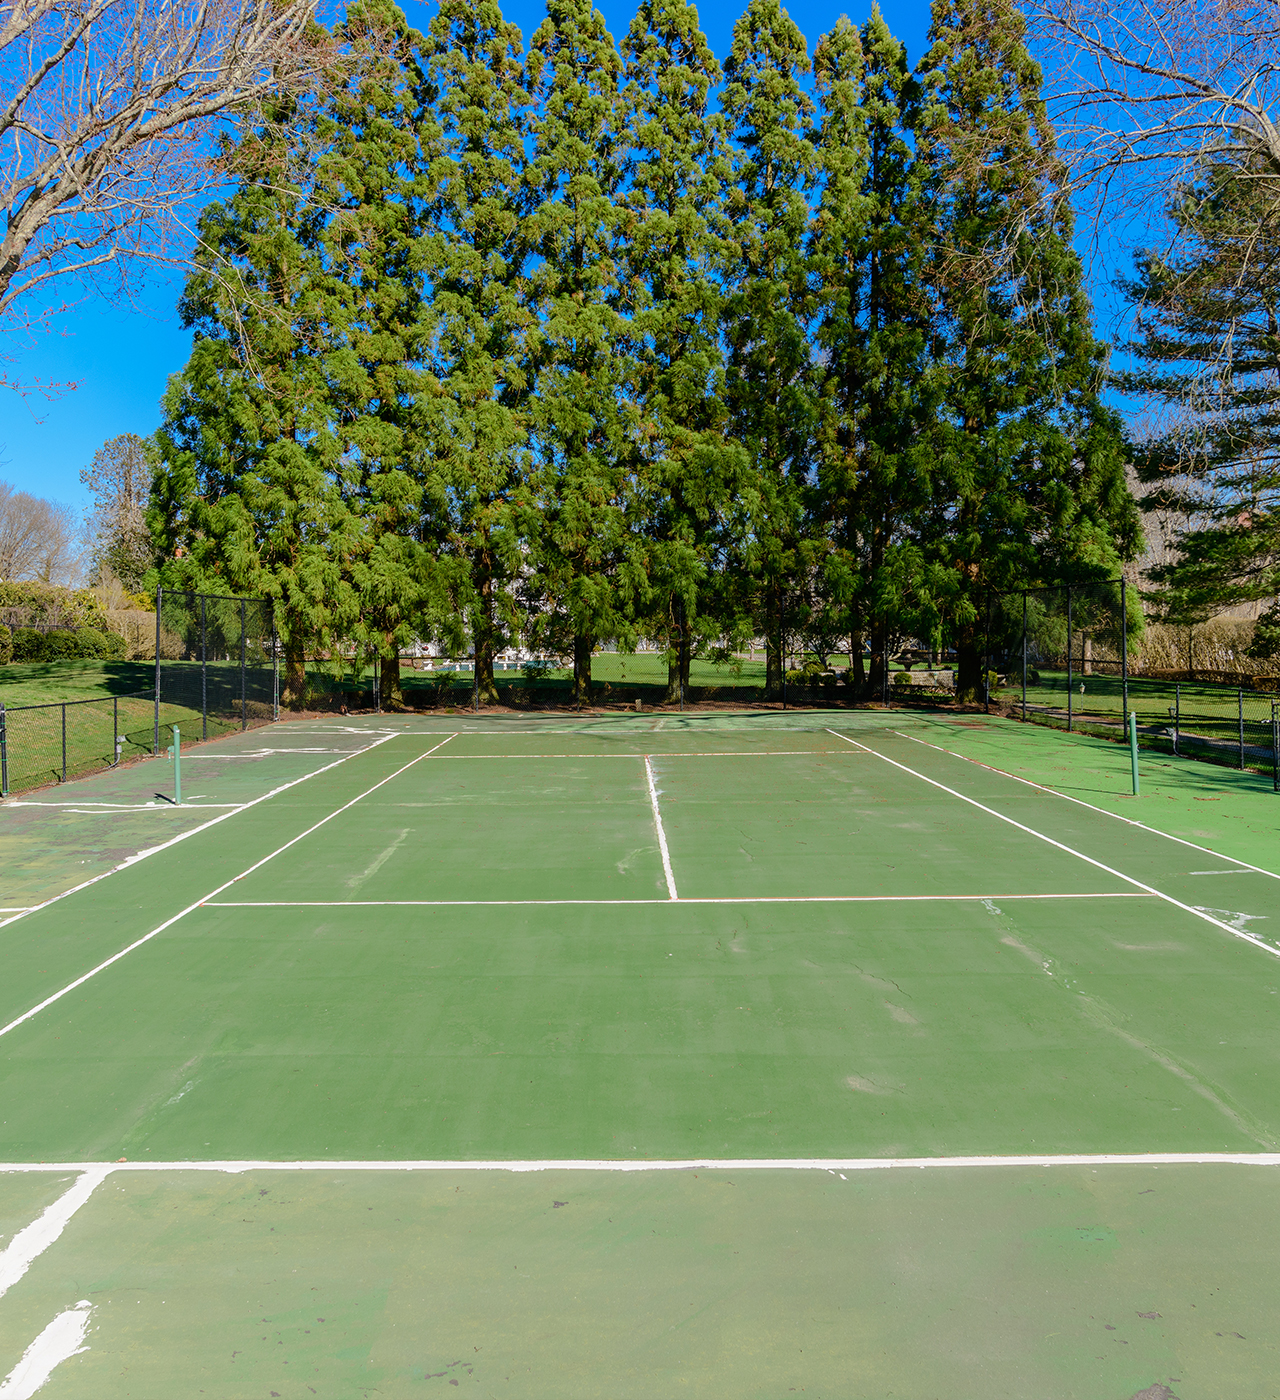 East Hampton's "White House" tennis court